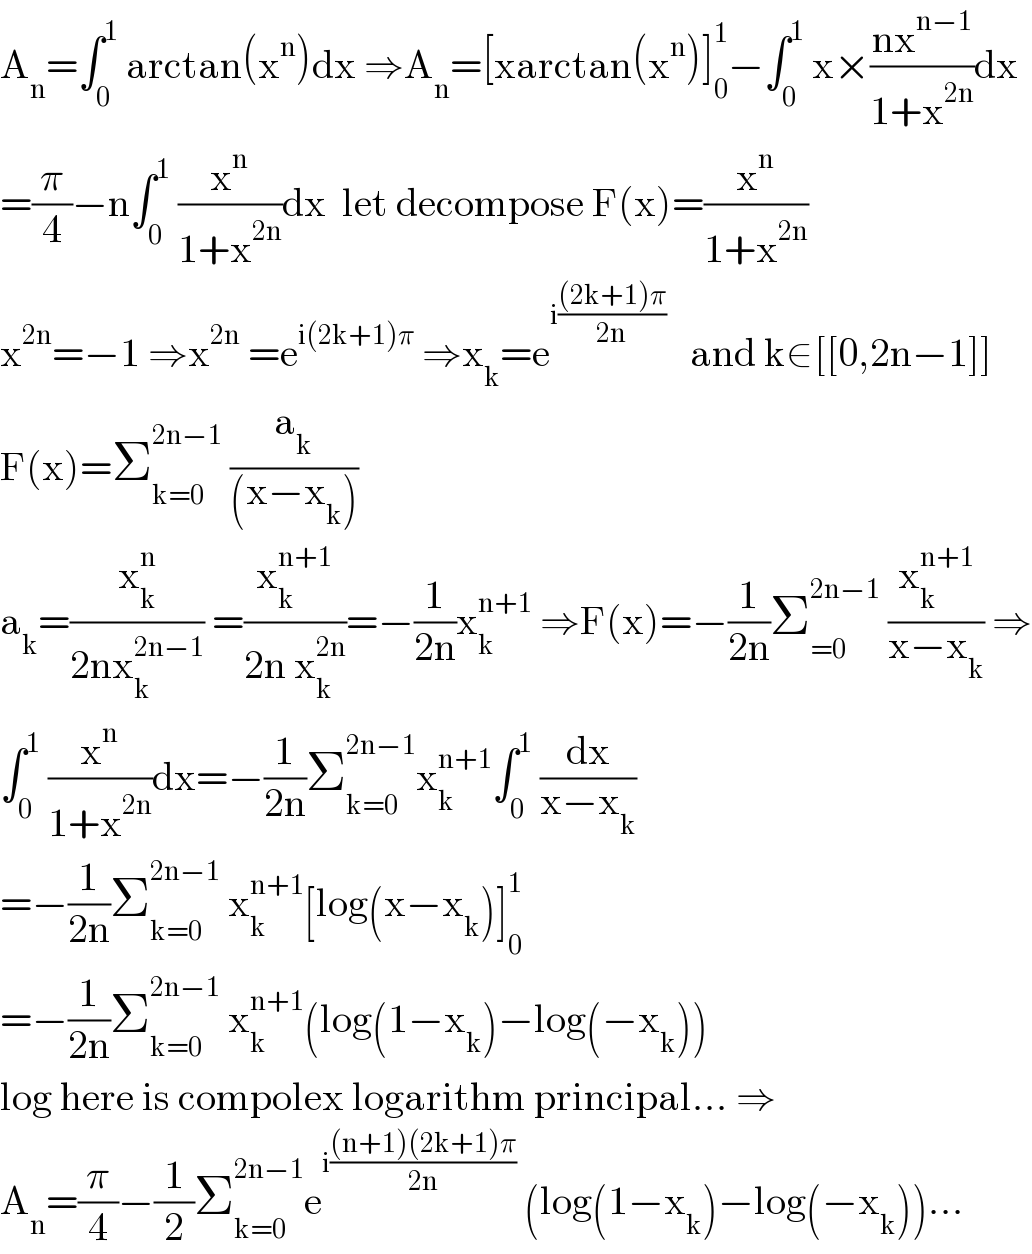 A_n =∫_0 ^1  arctan(x^n )dx ⇒A_n =[xarctan(x^n )]_0 ^1 −∫_0 ^1  x×((nx^(n−1) )/(1+x^(2n) ))dx  =(π/4)−n∫_0 ^1  (x^n /(1+x^(2n) ))dx  let decompose F(x)=(x^n /(1+x^(2n) ))  x^(2n) =−1 ⇒x^(2n)  =e^(i(2k+1)π)  ⇒x_k =e^(i(((2k+1)π)/(2n)))    and k∈[[0,2n−1]]  F(x)=Σ_(k=0) ^(2n−1)  (a_k /((x−x_k )))  a_k =(x_k ^n /(2nx_k ^(2n−1) )) =(x_k ^(n+1) /(2n x_k ^(2n) ))=−(1/(2n))x_k ^(n+1)  ⇒F(x)=−(1/(2n))Σ_(=0) ^(2n−1)  (x_k ^(n+1) /(x−x_k )) ⇒  ∫_0 ^1  (x^n /(1+x^(2n) ))dx=−(1/(2n))Σ_(k=0) ^(2n−1) x_k ^(n+1) ∫_0 ^1  (dx/(x−x_k ))  =−(1/(2n))Σ_(k=0) ^(2n−1)  x_k ^(n+1) [log(x−x_k )]_0 ^1   =−(1/(2n))Σ_(k=0) ^(2n−1)  x_k ^(n+1) (log(1−x_k )−log(−x_k ))  log here is compolex logarithm principal... ⇒  A_n =(π/4)−(1/2)Σ_(k=0) ^(2n−1) e^(i(((n+1)(2k+1)π)/(2n)))  (log(1−x_k )−log(−x_k ))...  